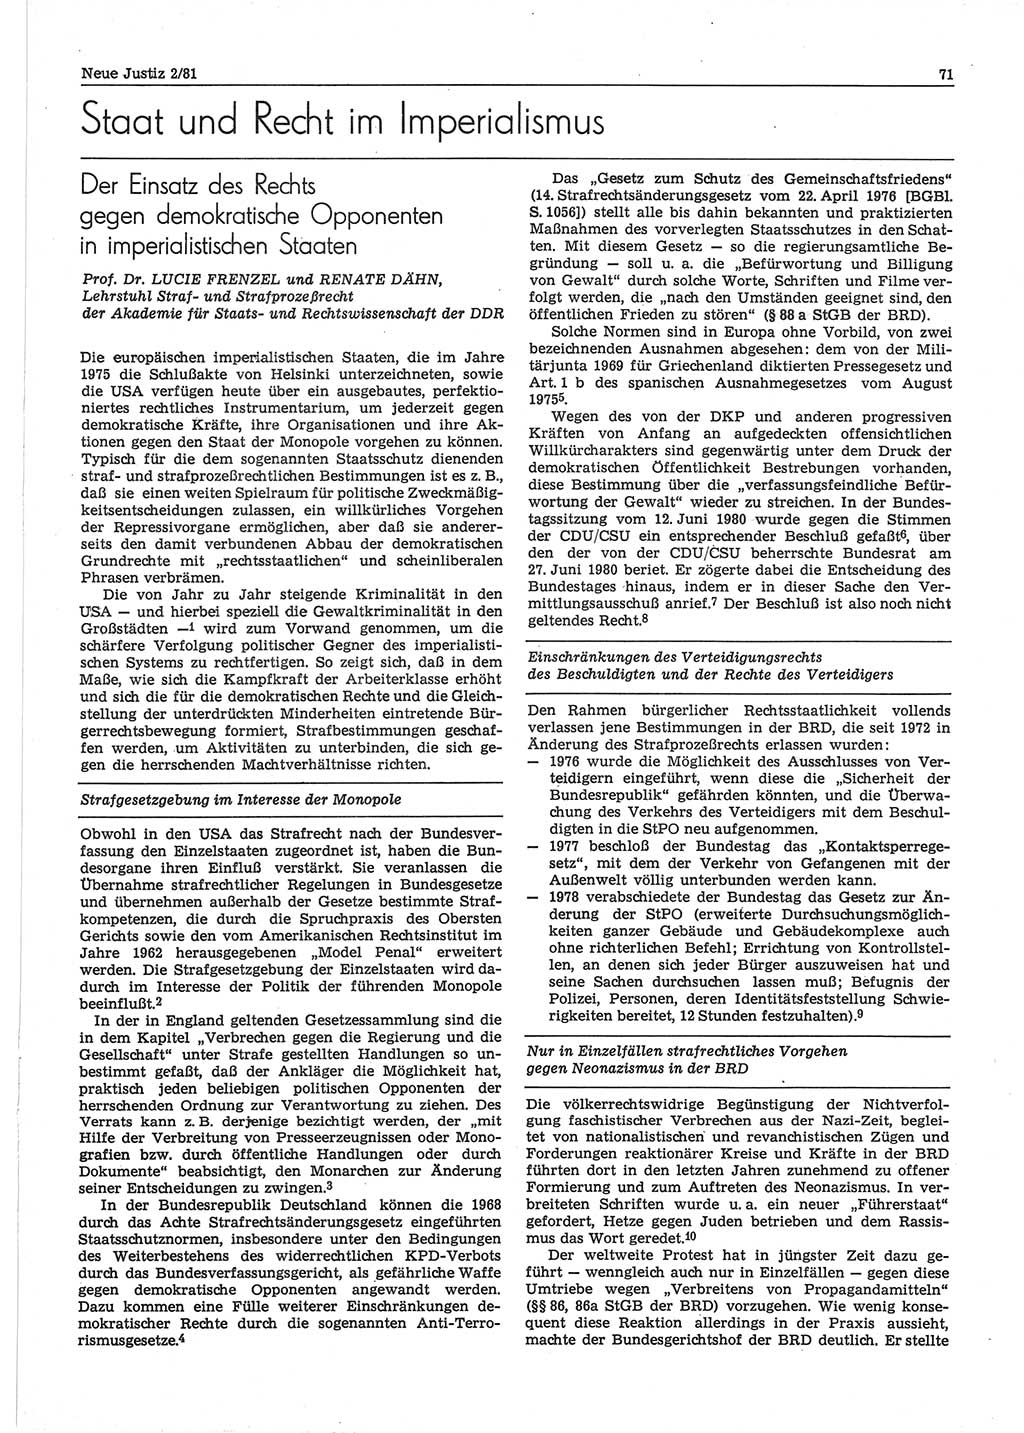 Neue Justiz (NJ), Zeitschrift für sozialistisches Recht und Gesetzlichkeit [Deutsche Demokratische Republik (DDR)], 35. Jahrgang 1981, Seite 71 (NJ DDR 1981, S. 71)